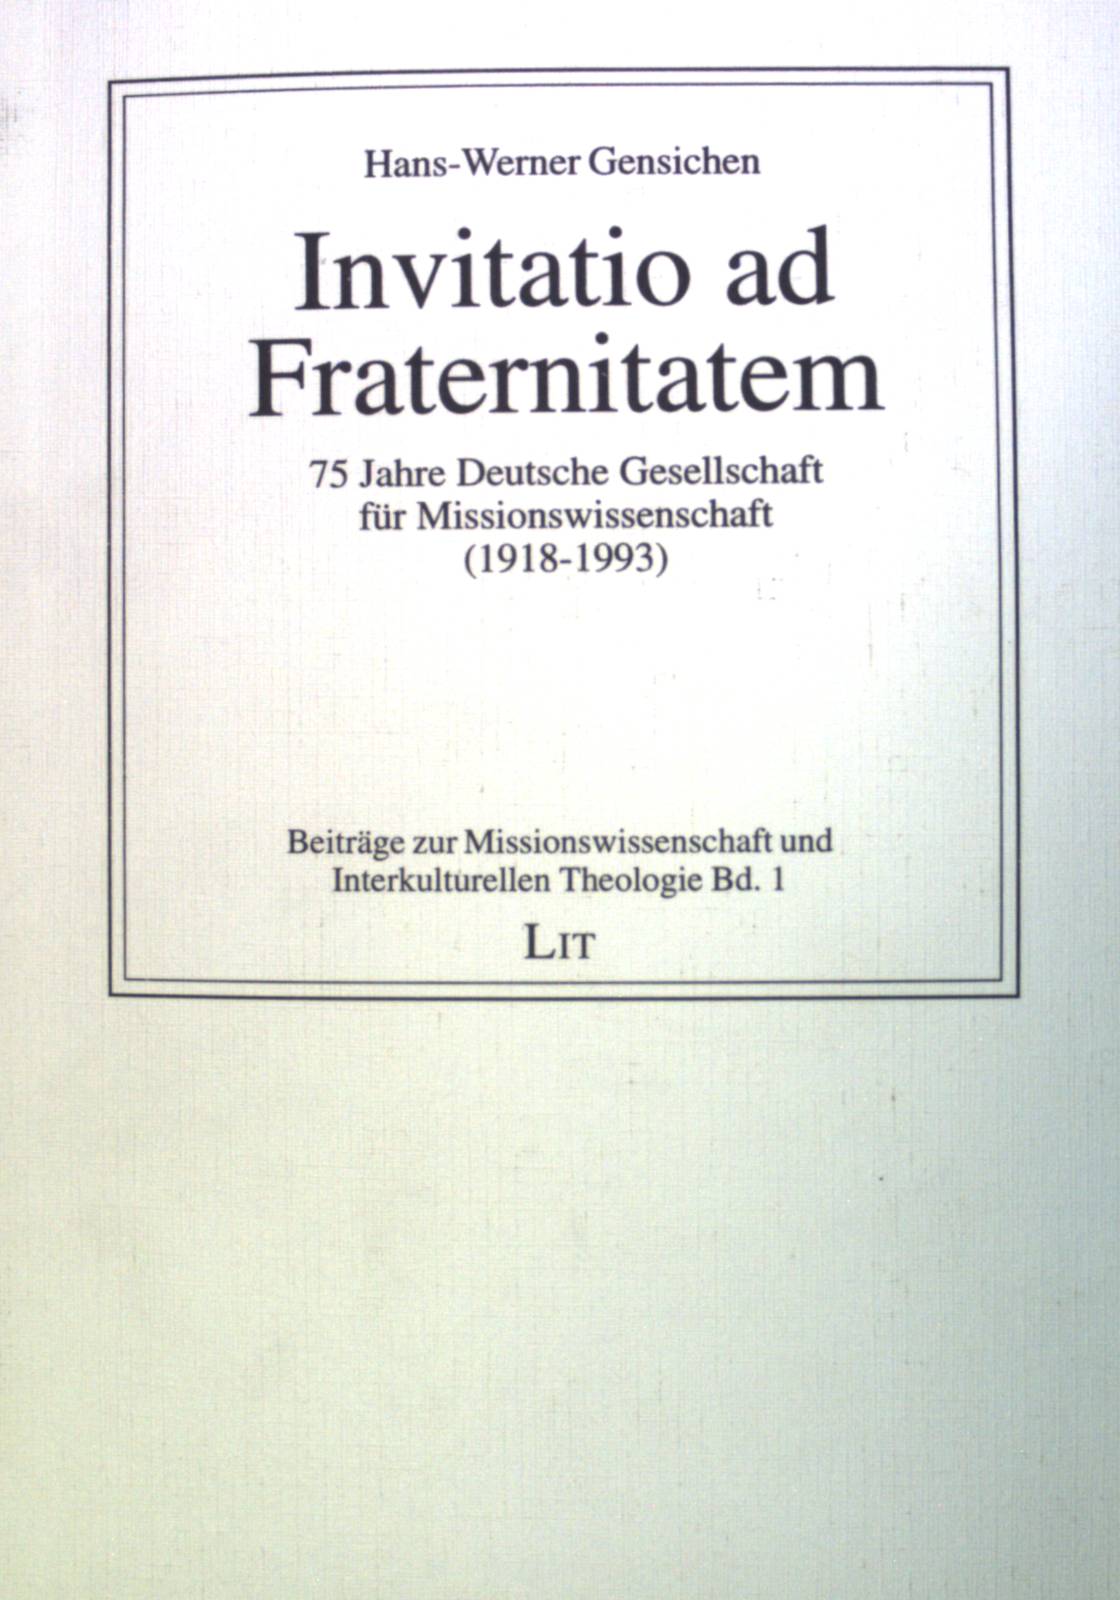 Invitatio ad fraternitatem : 75 Jahre Deutsche Gesellschaft für Missionswissenschaft (1918 - 1993). Beiträge zur Missionswissenschaft und interkulturellen Theologie ; Bd. 1 - Gensichen, Hans-Werner